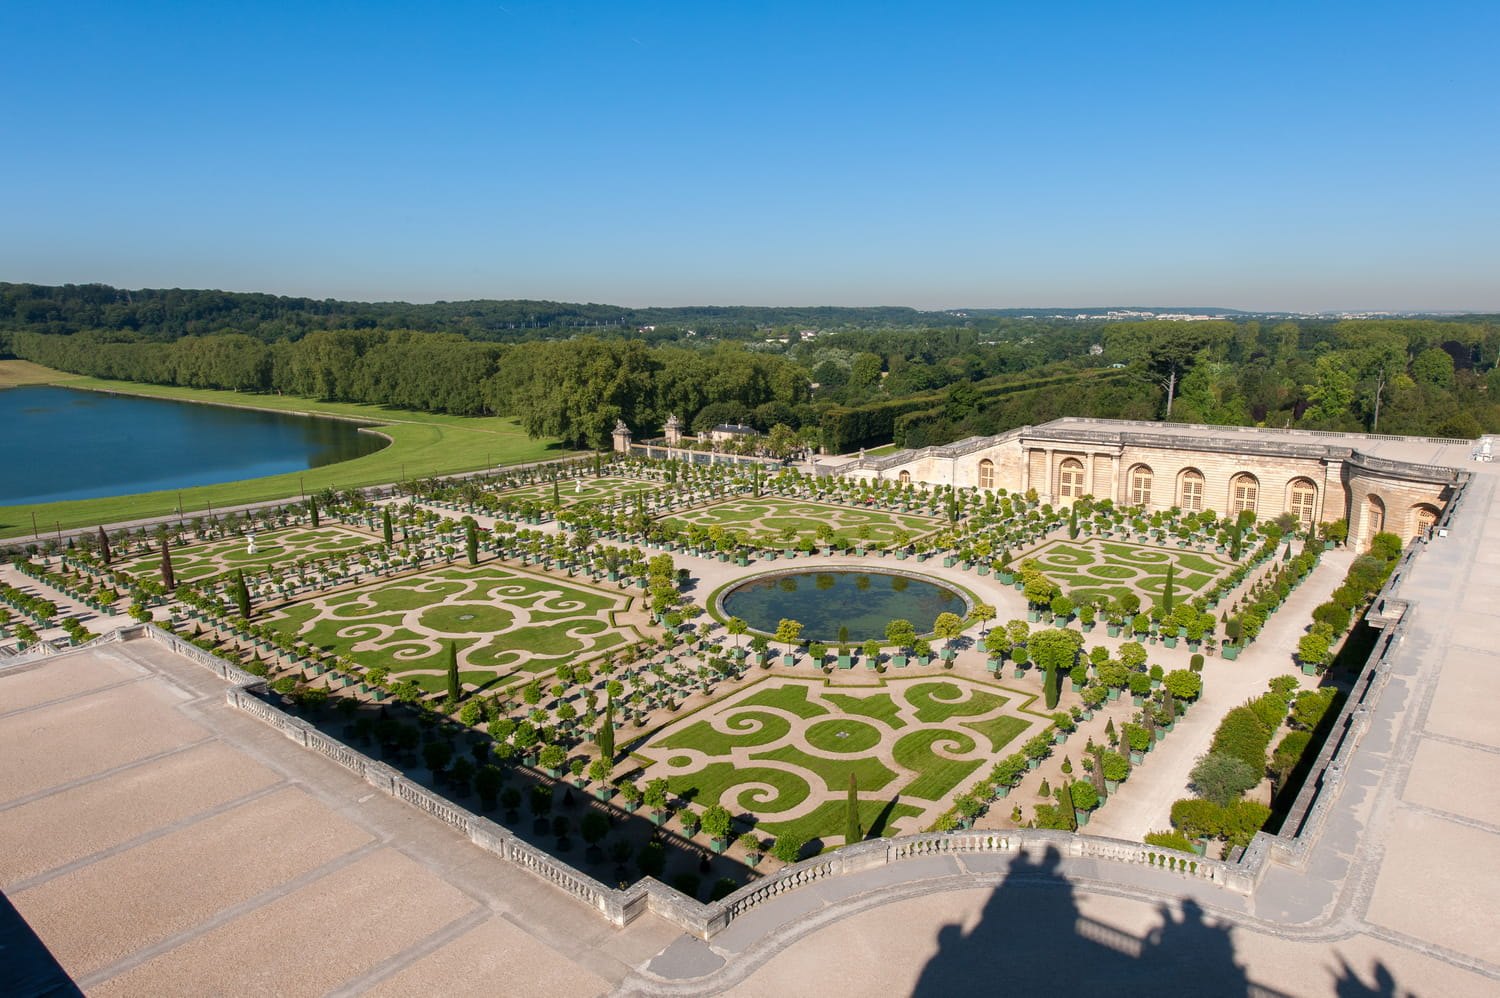 Версальский садово-парковый комплекс